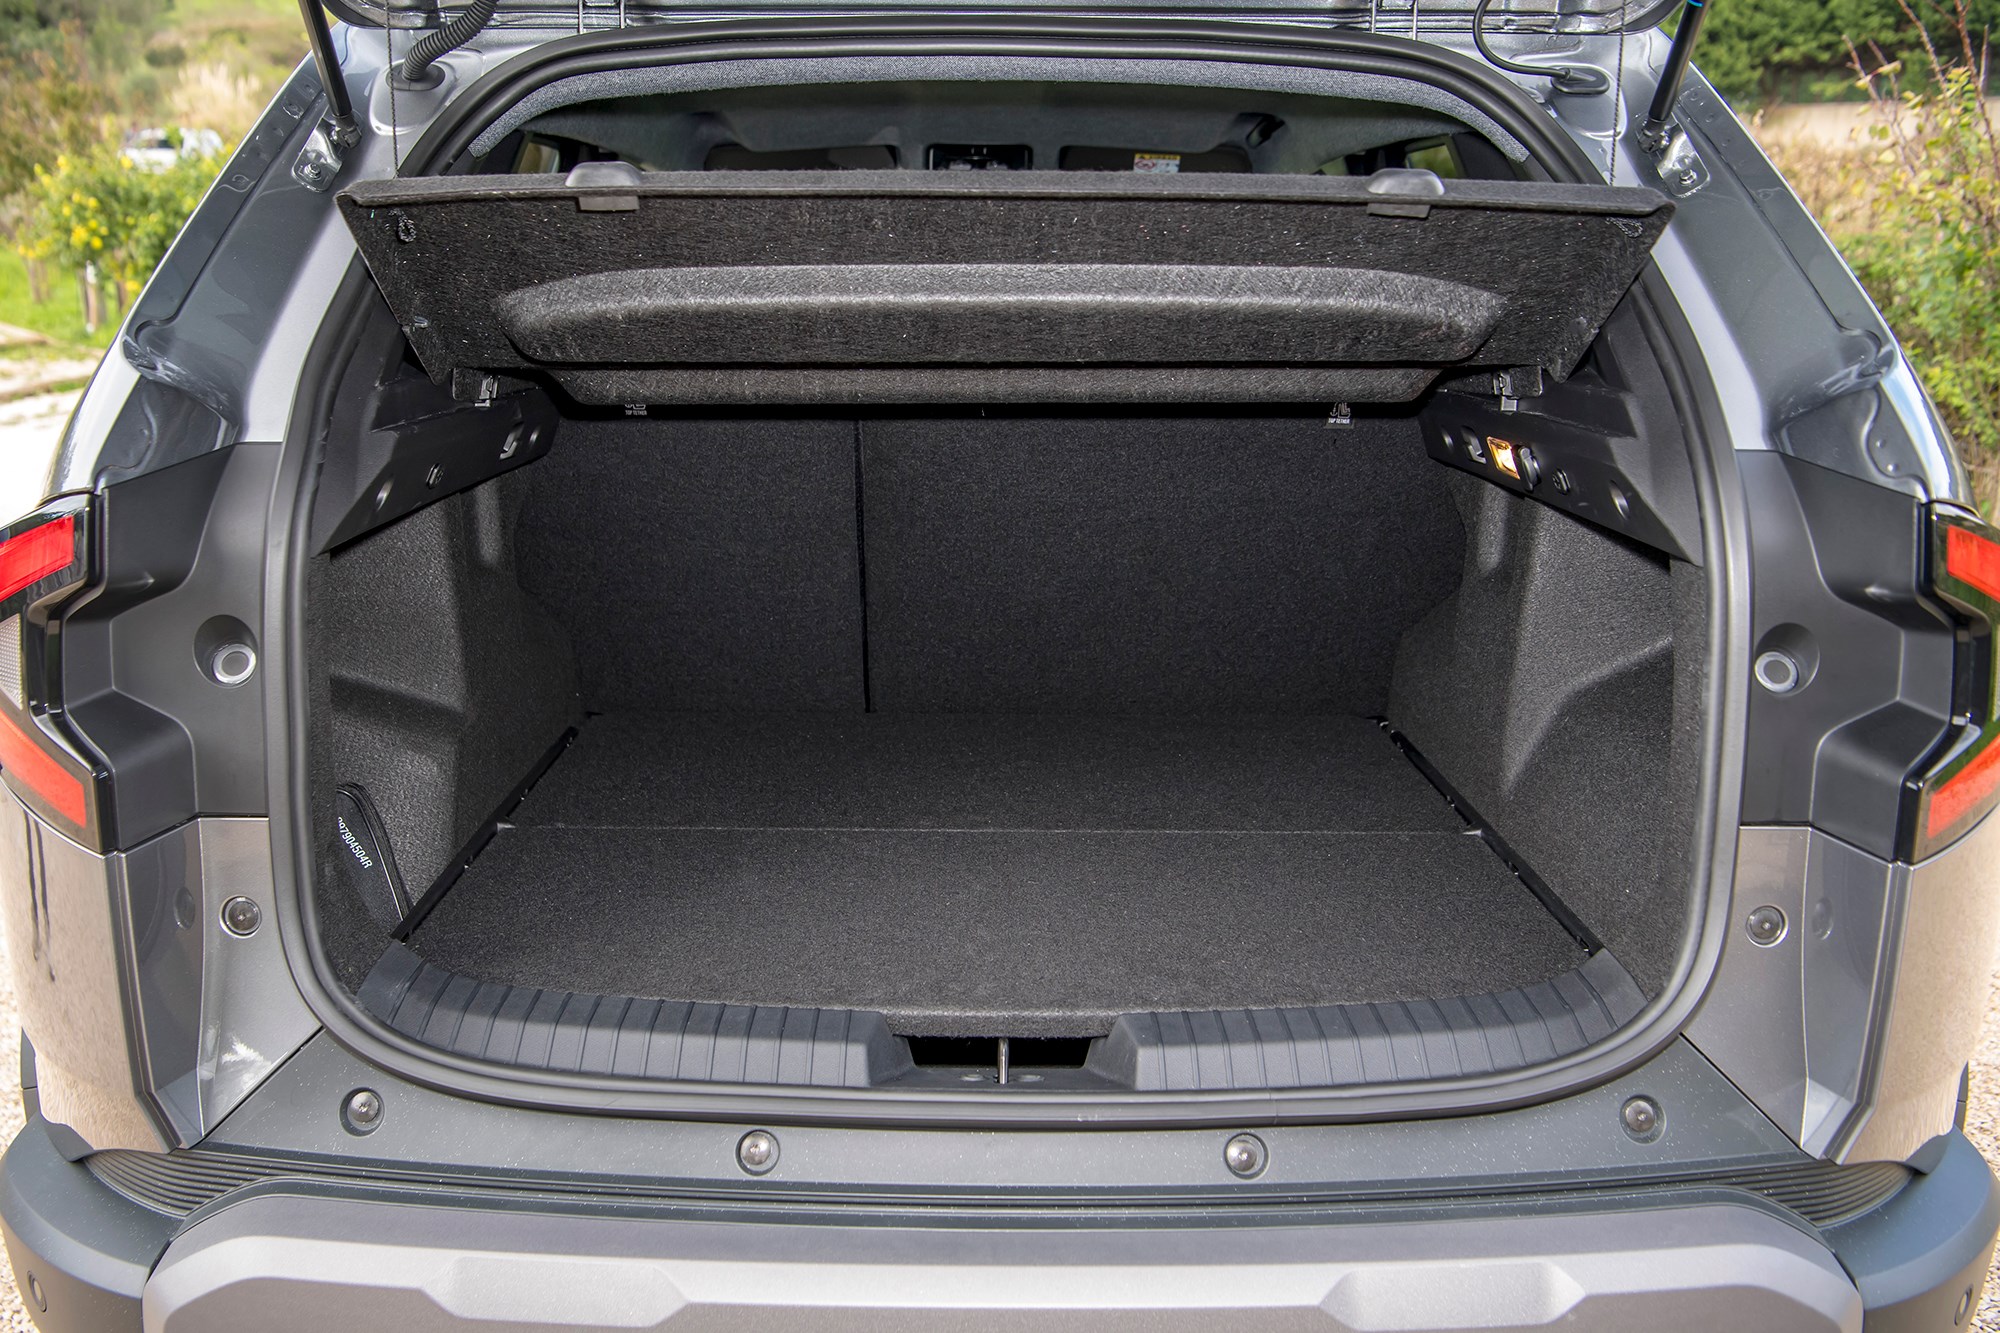 Dacia Sandero dimensions, boot space and similars